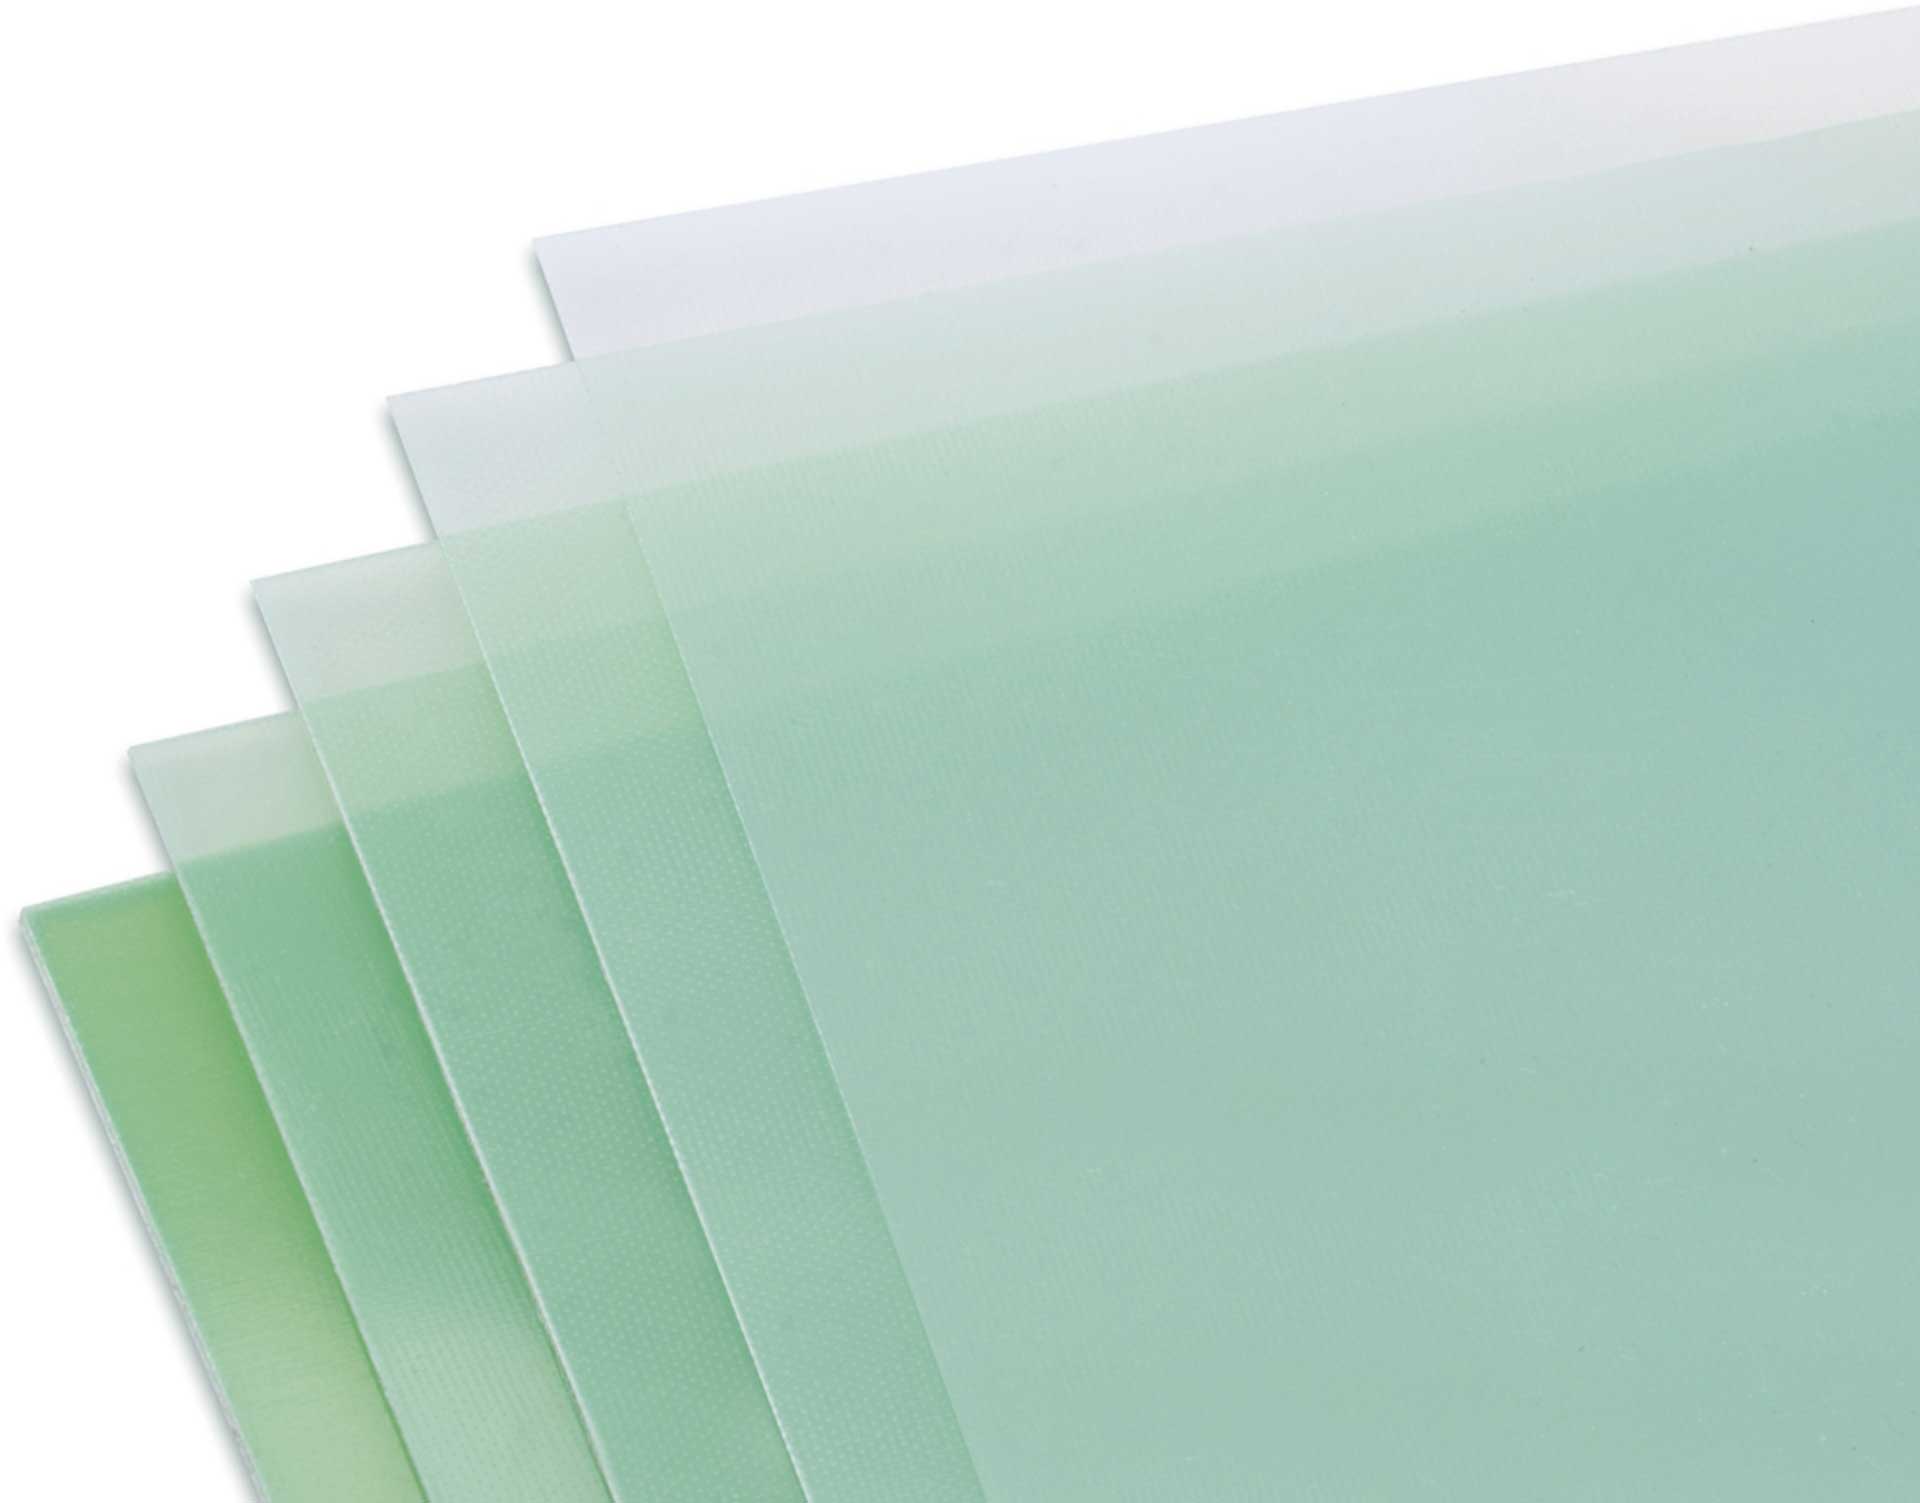 Modellbau Lindinger GFK-Platte 0,8x610x340mm matt, grünlich transparent